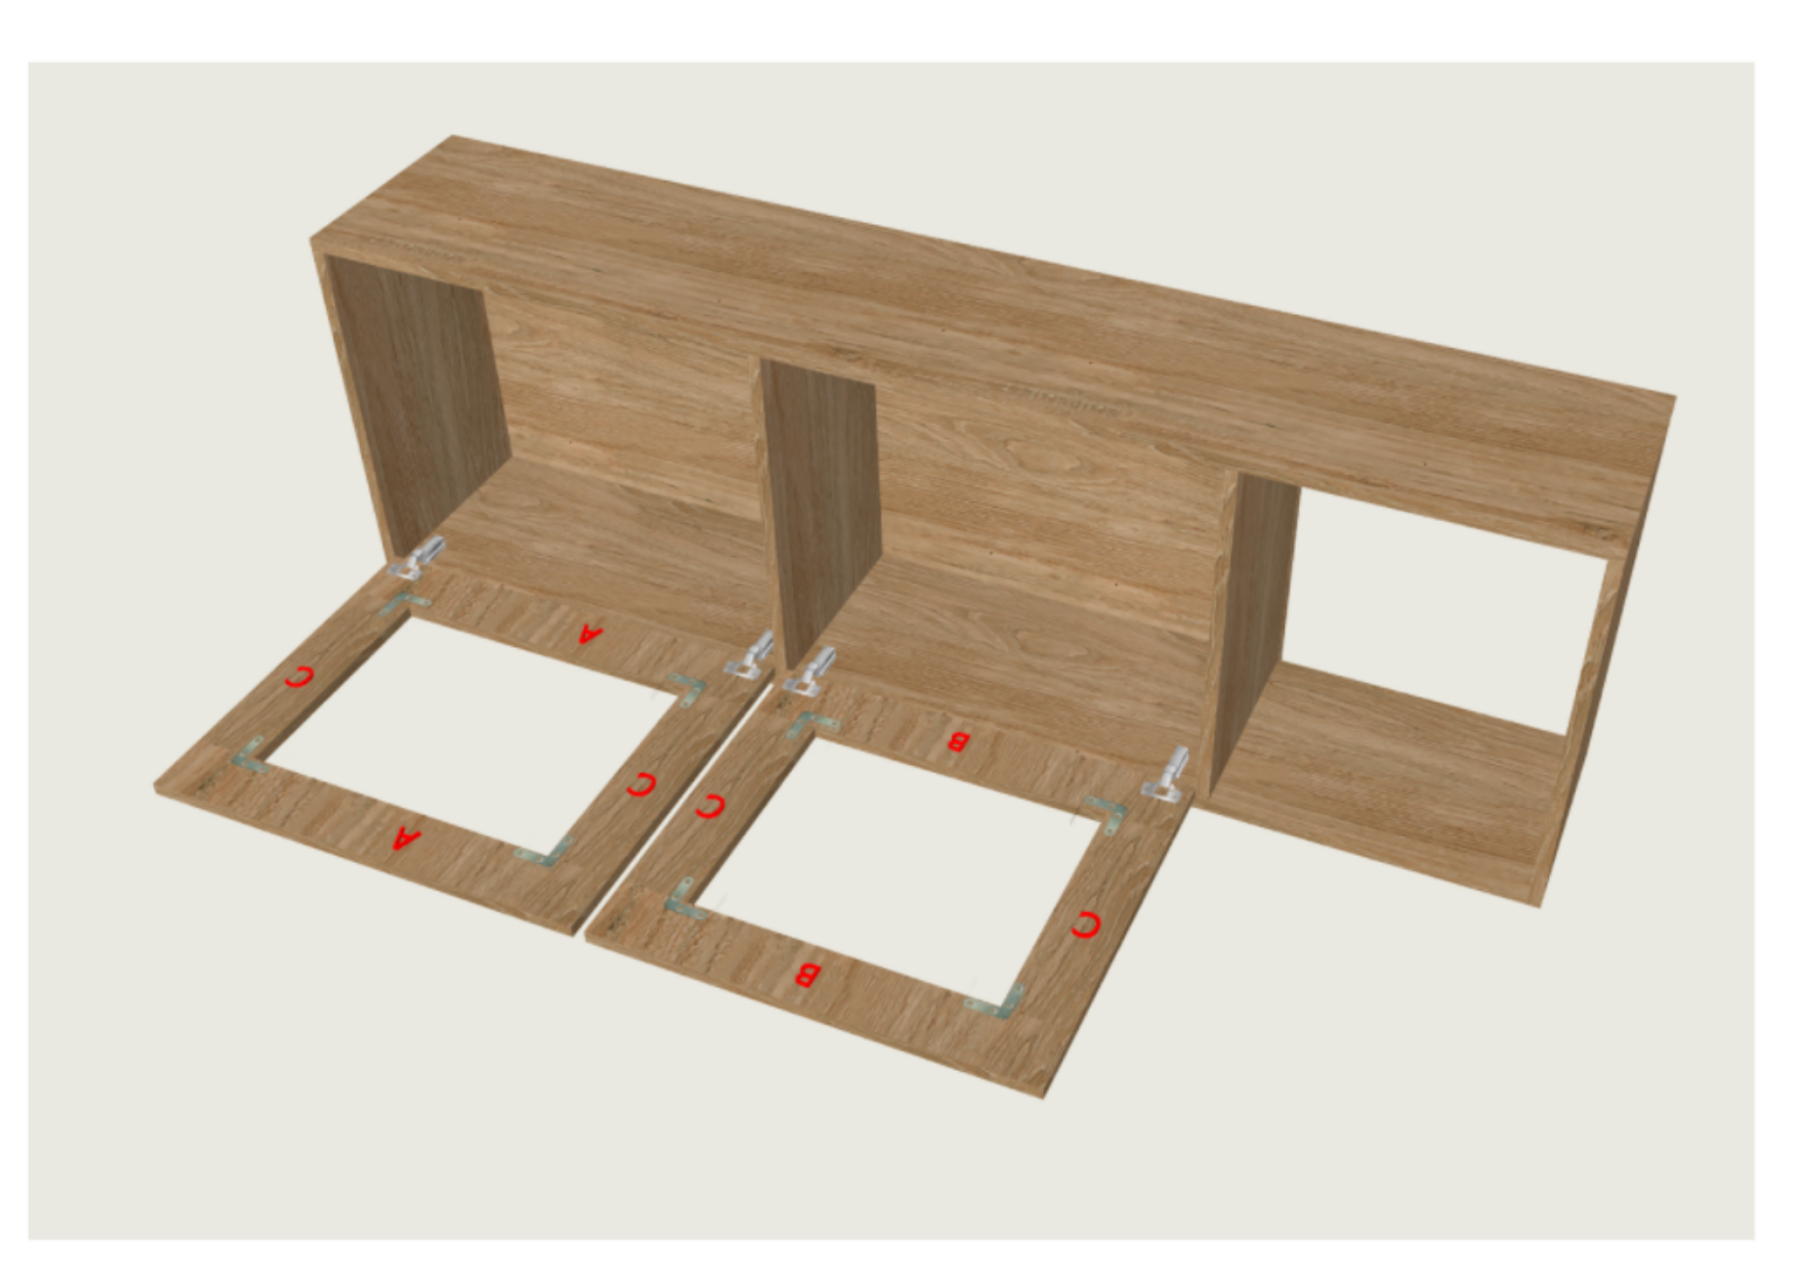 Comment créer un meuble de rangement pour son espace fitness (4m2) ?